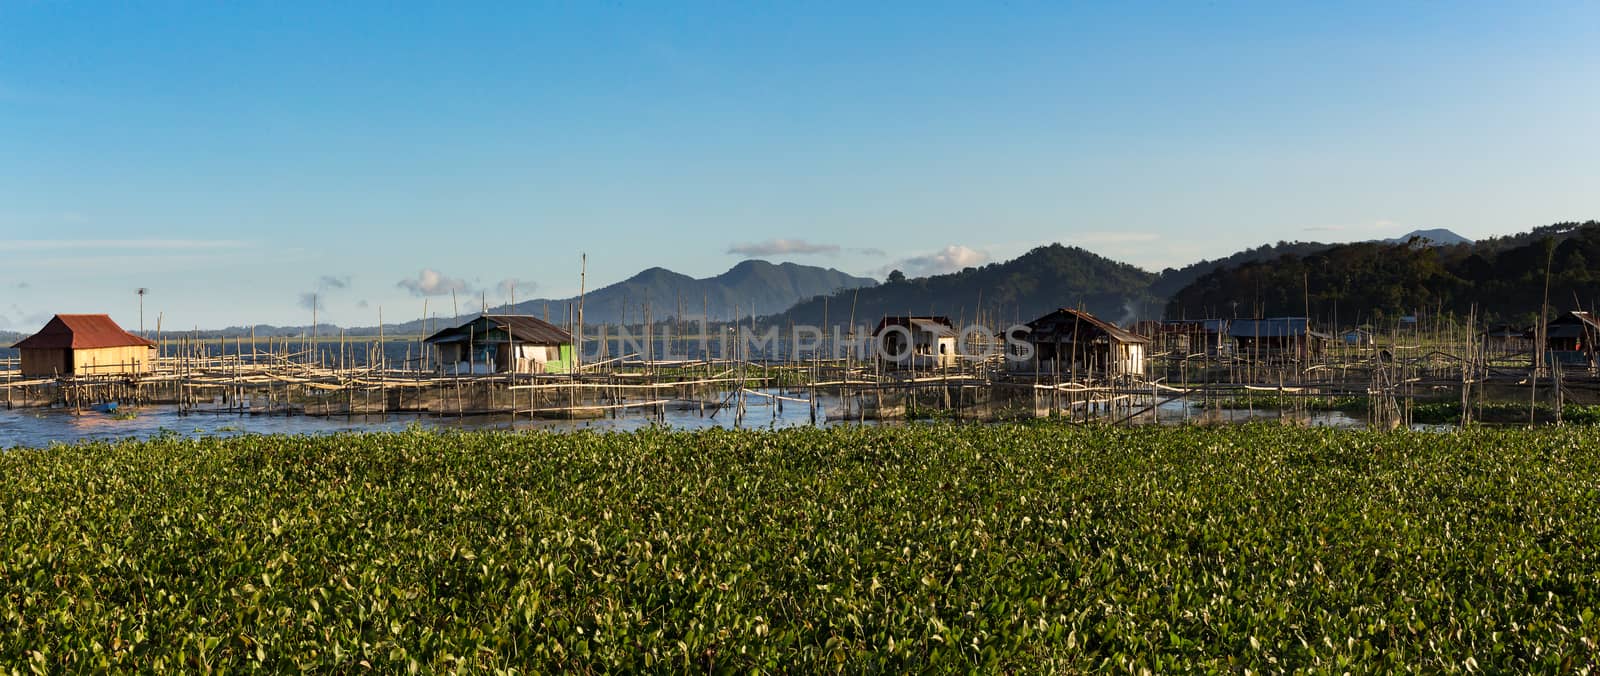 Fish farm at Lake Tondano by artush